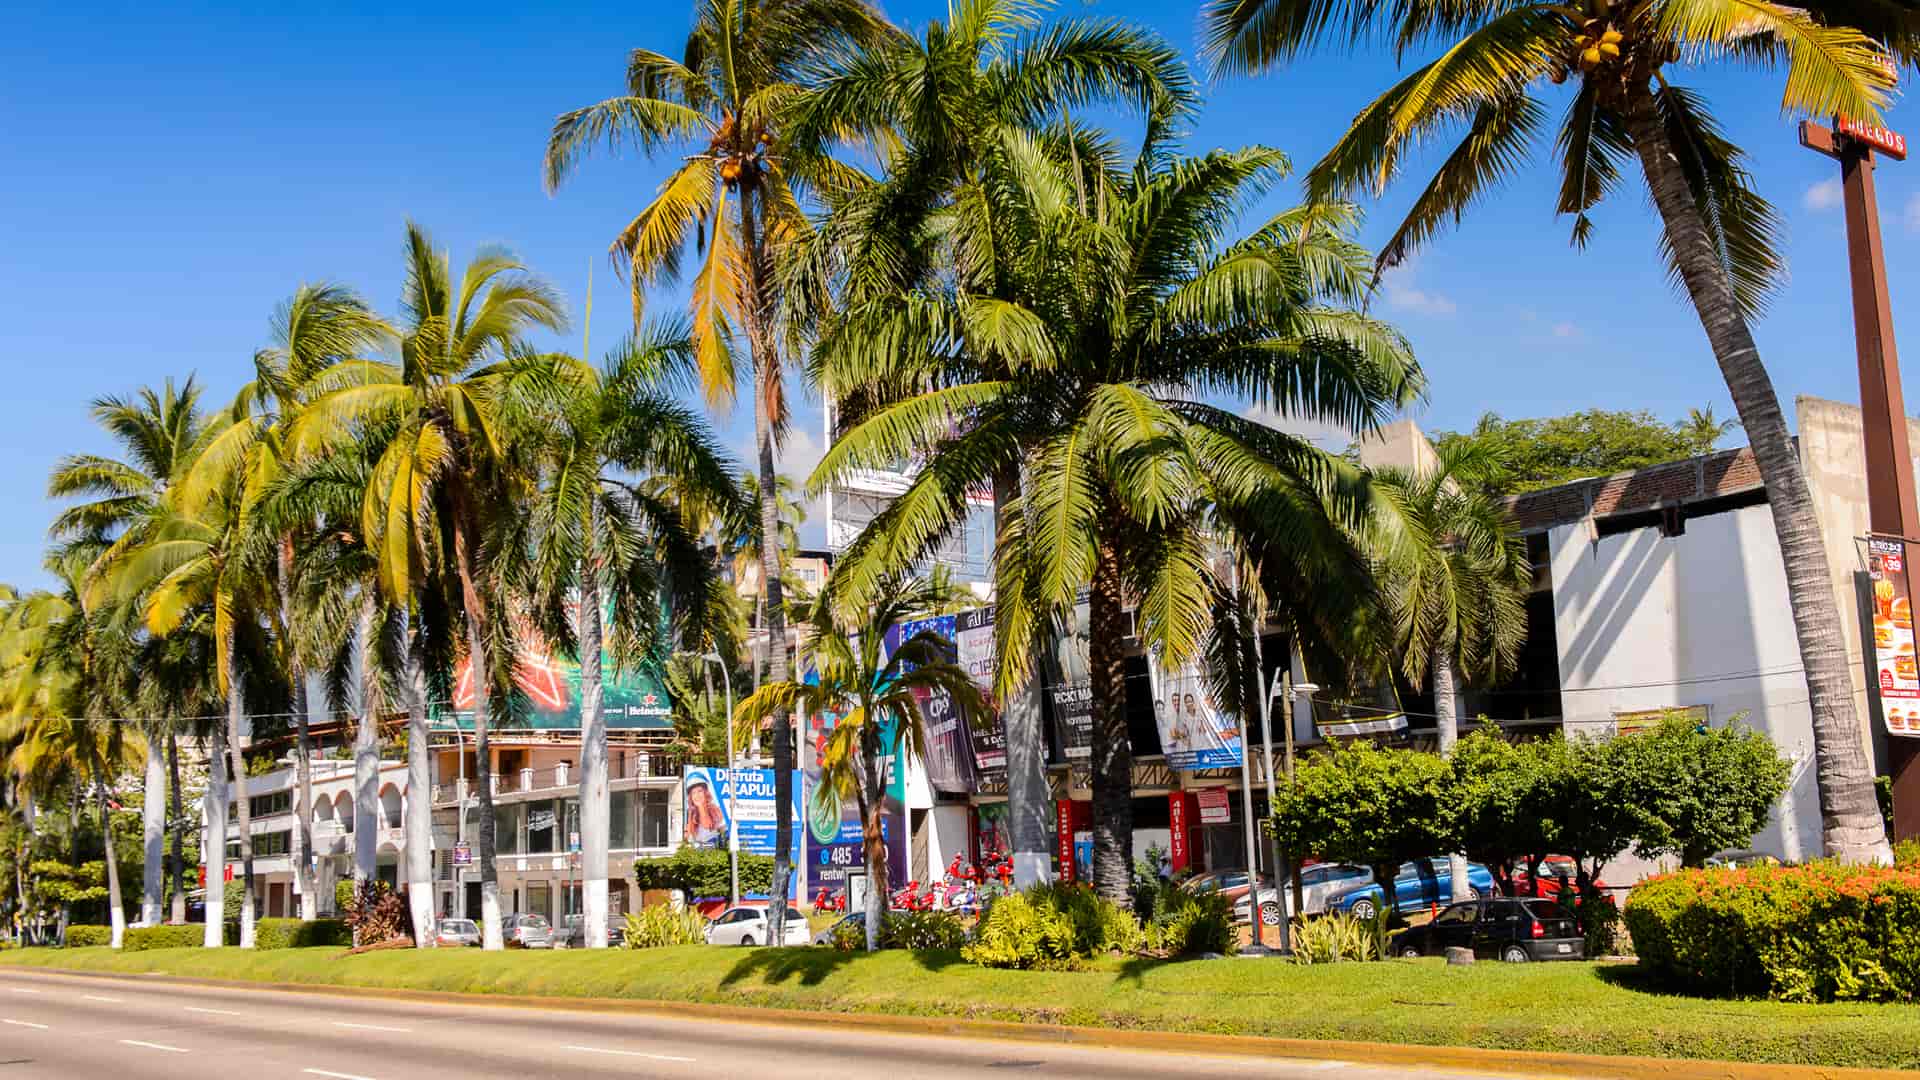 calle con palmeras de la ciudad de acapulco que represneta las sucursales de telcel en esa localidad